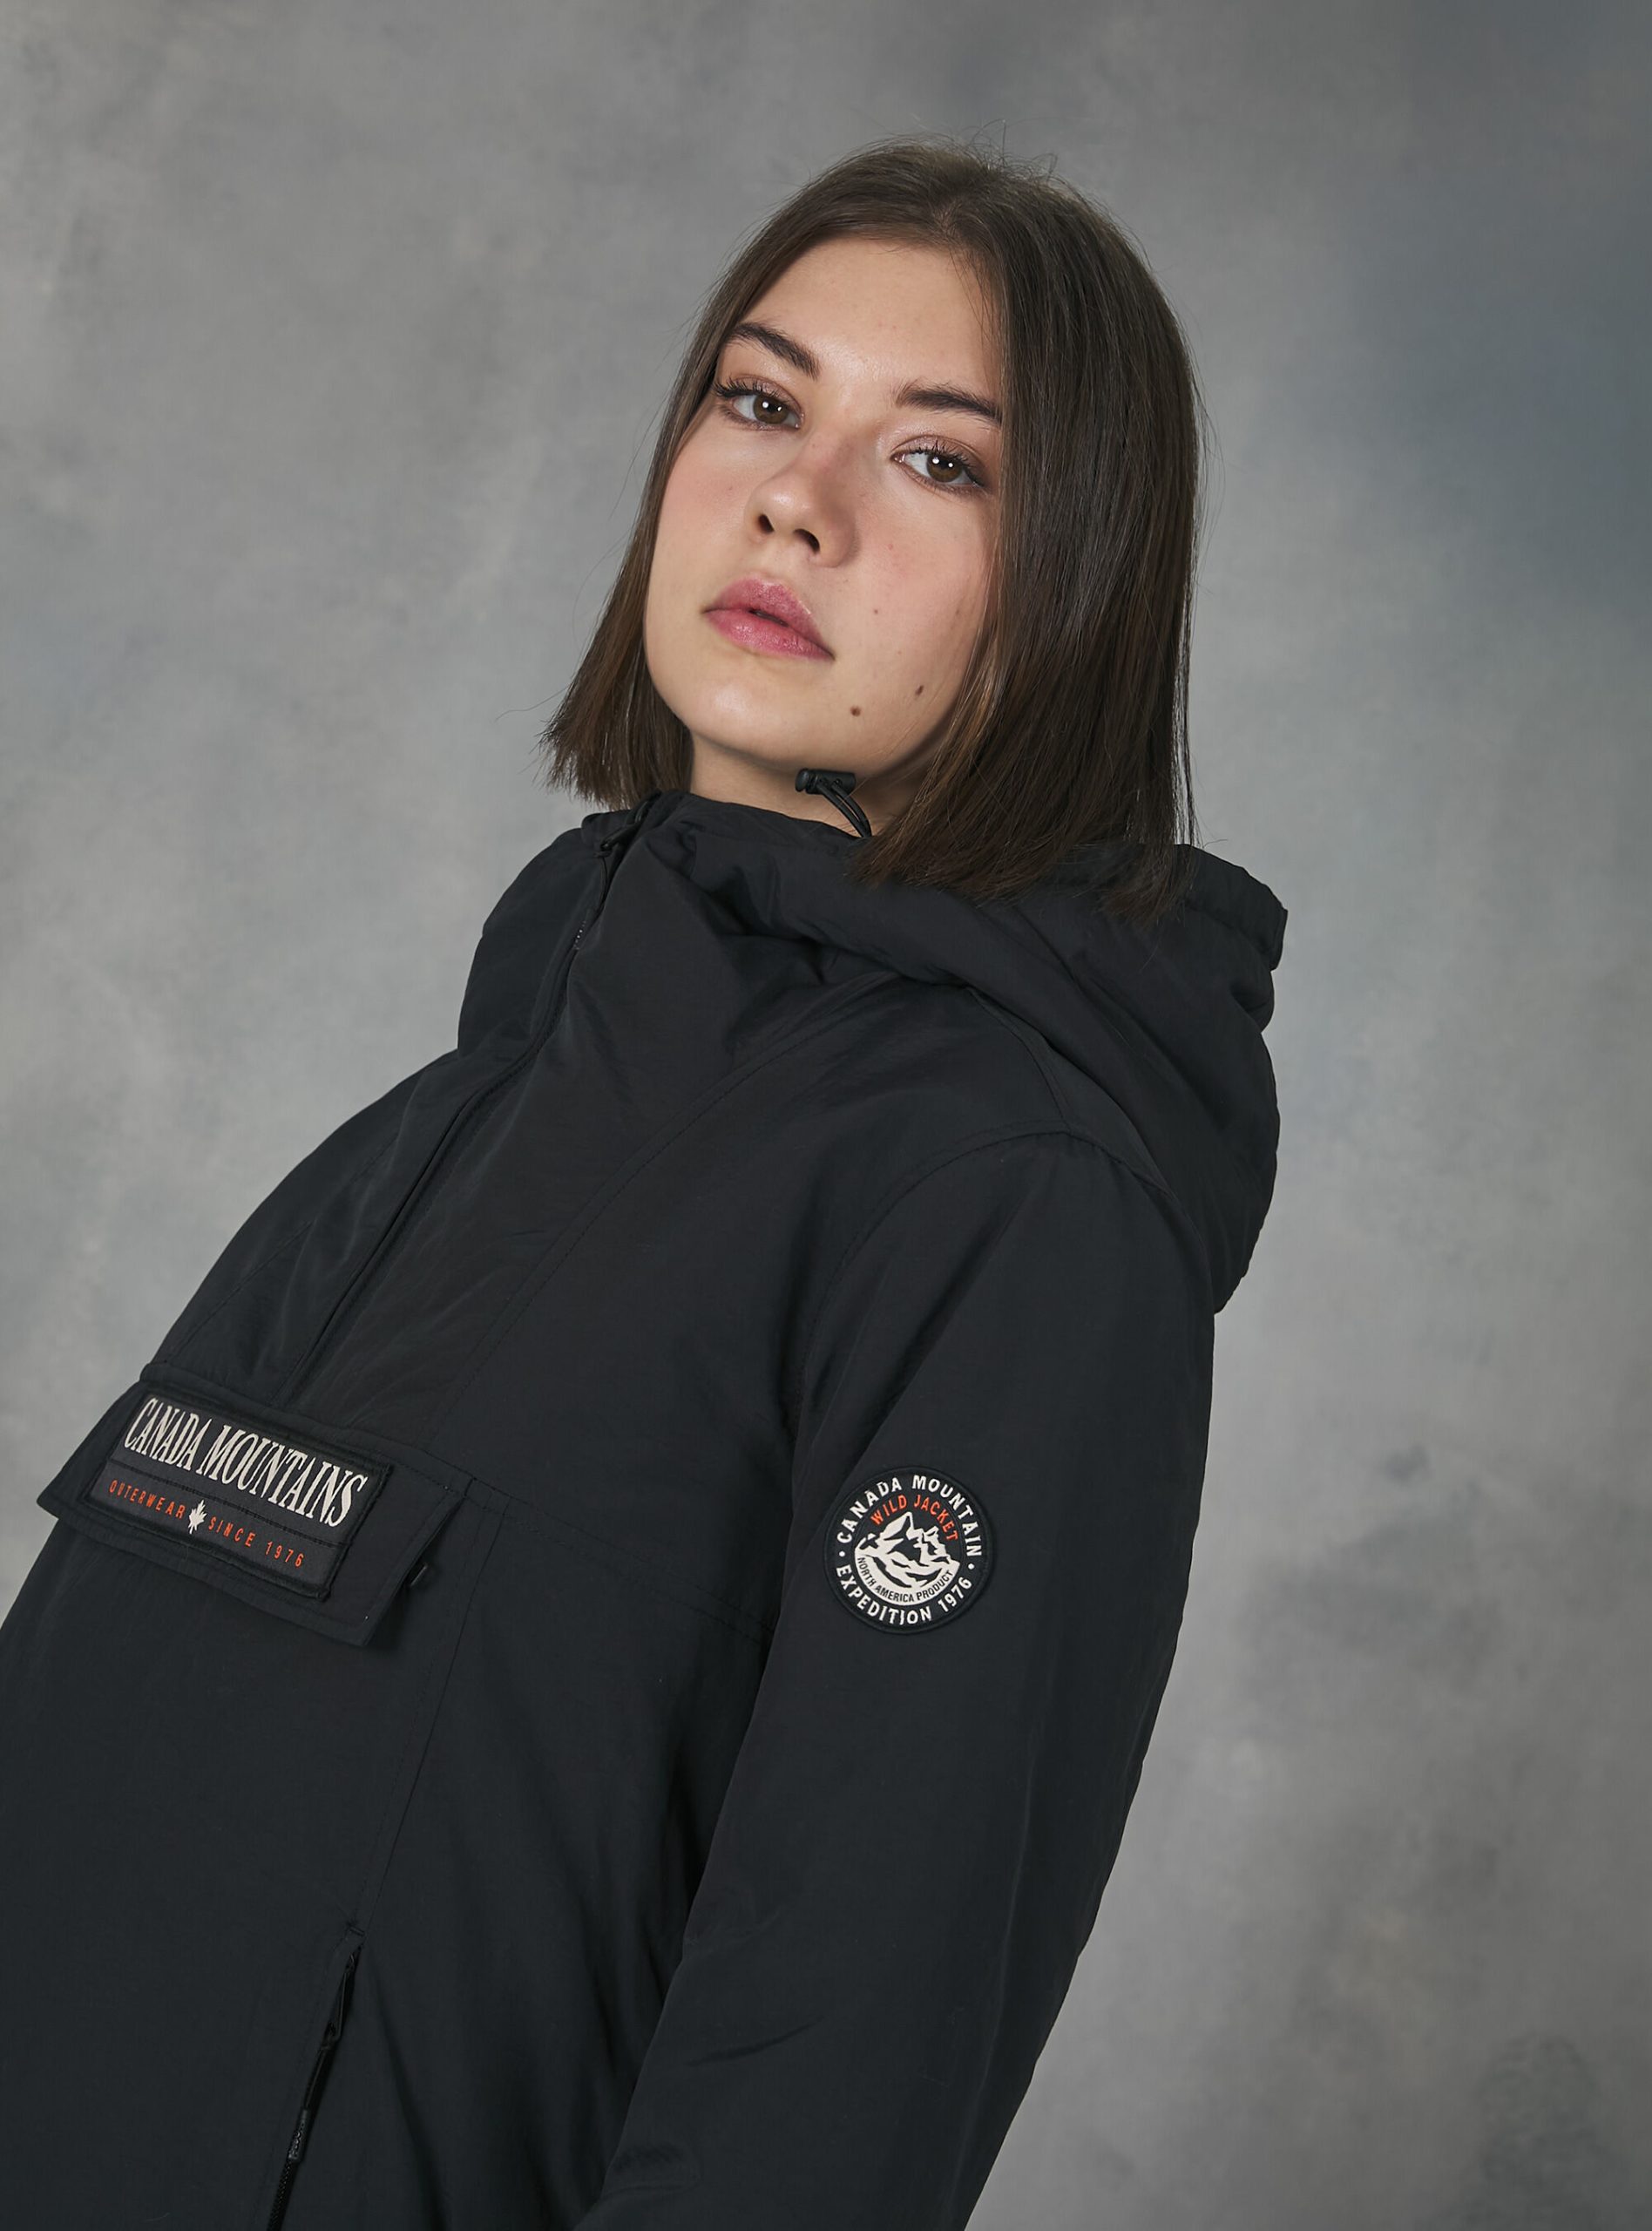 Alcott Bk1 Black Mäntel Und Jacken Frauen Pflegeleicht Anorak Jacket With Recycled Padding – 2